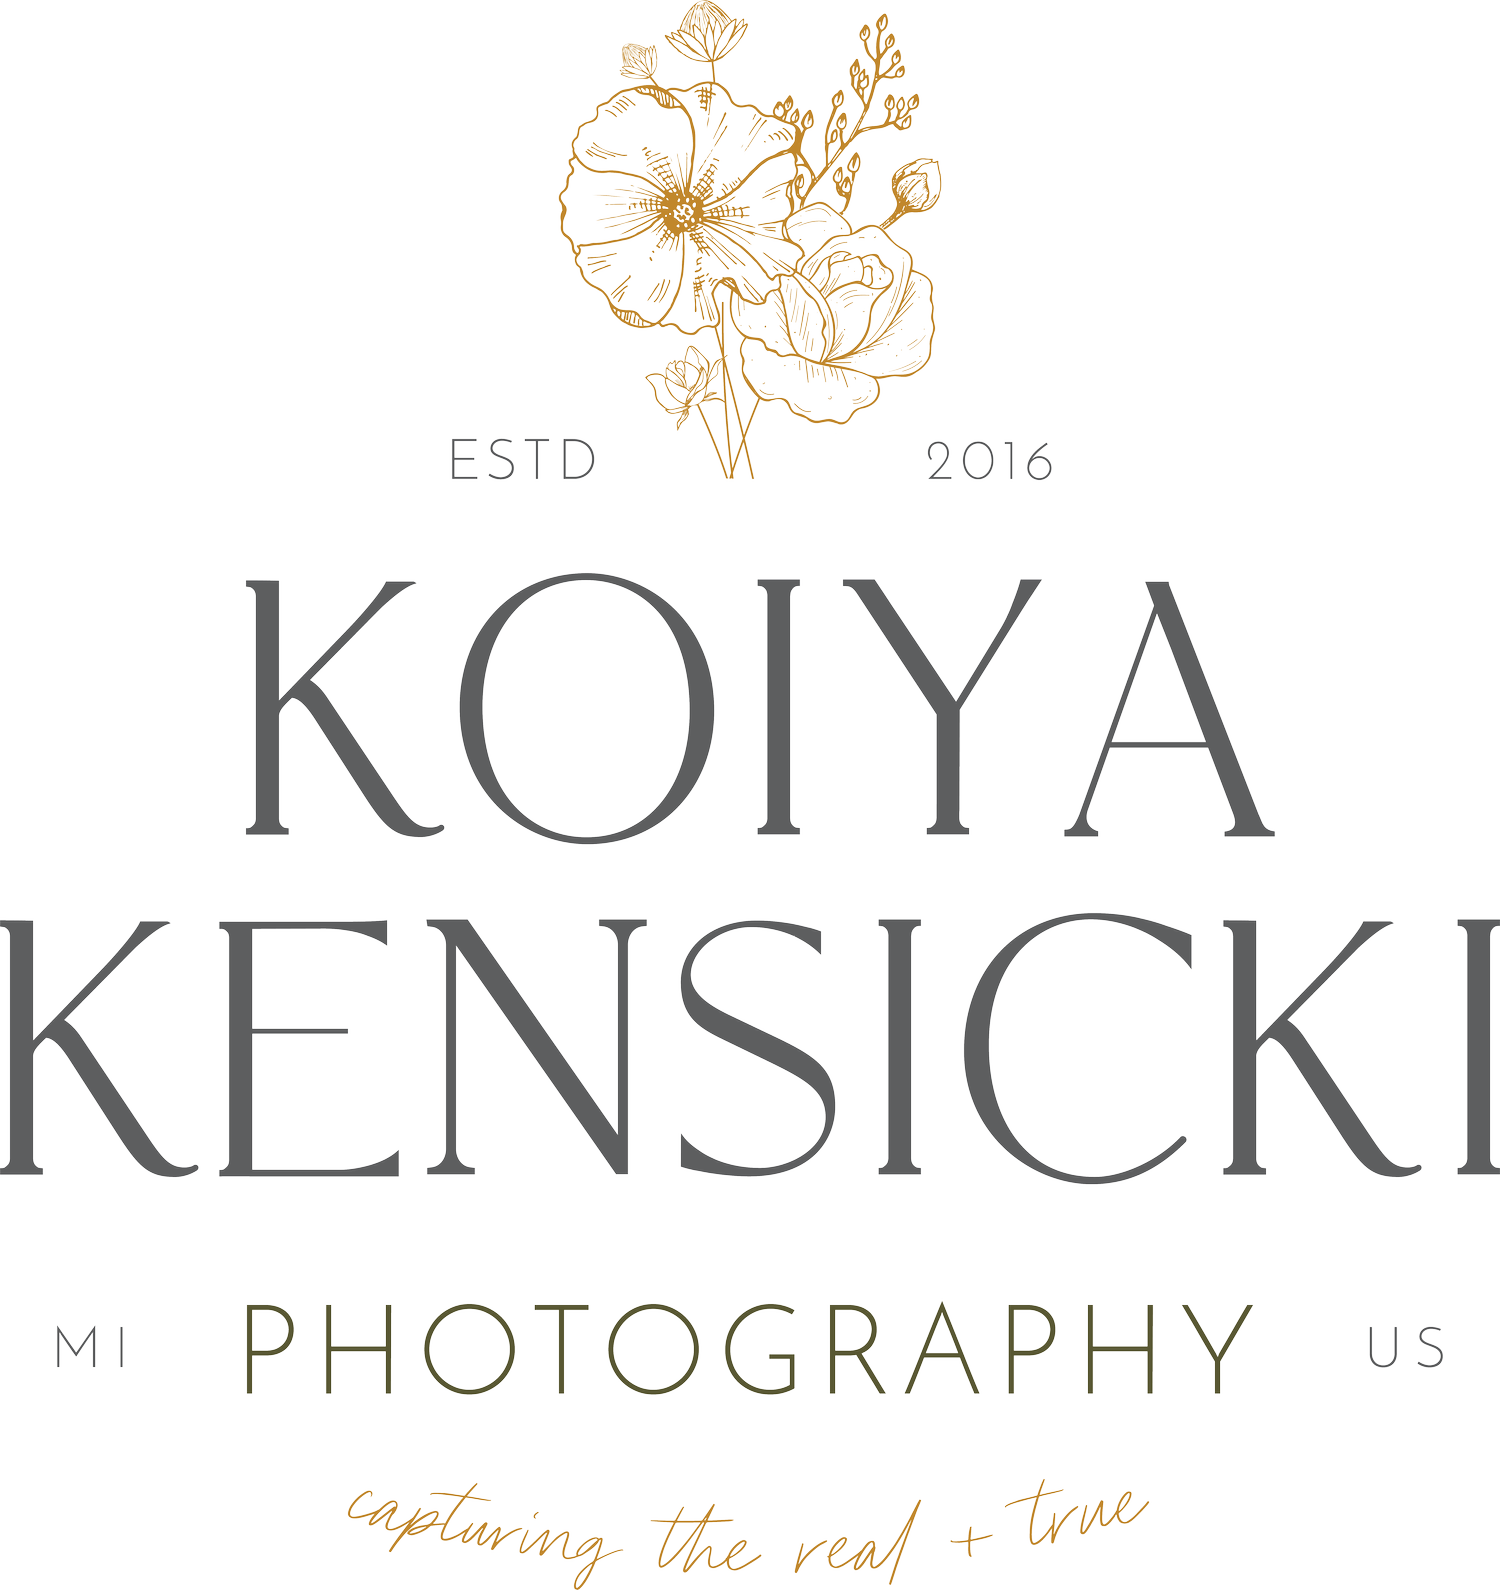 kjkphotographs